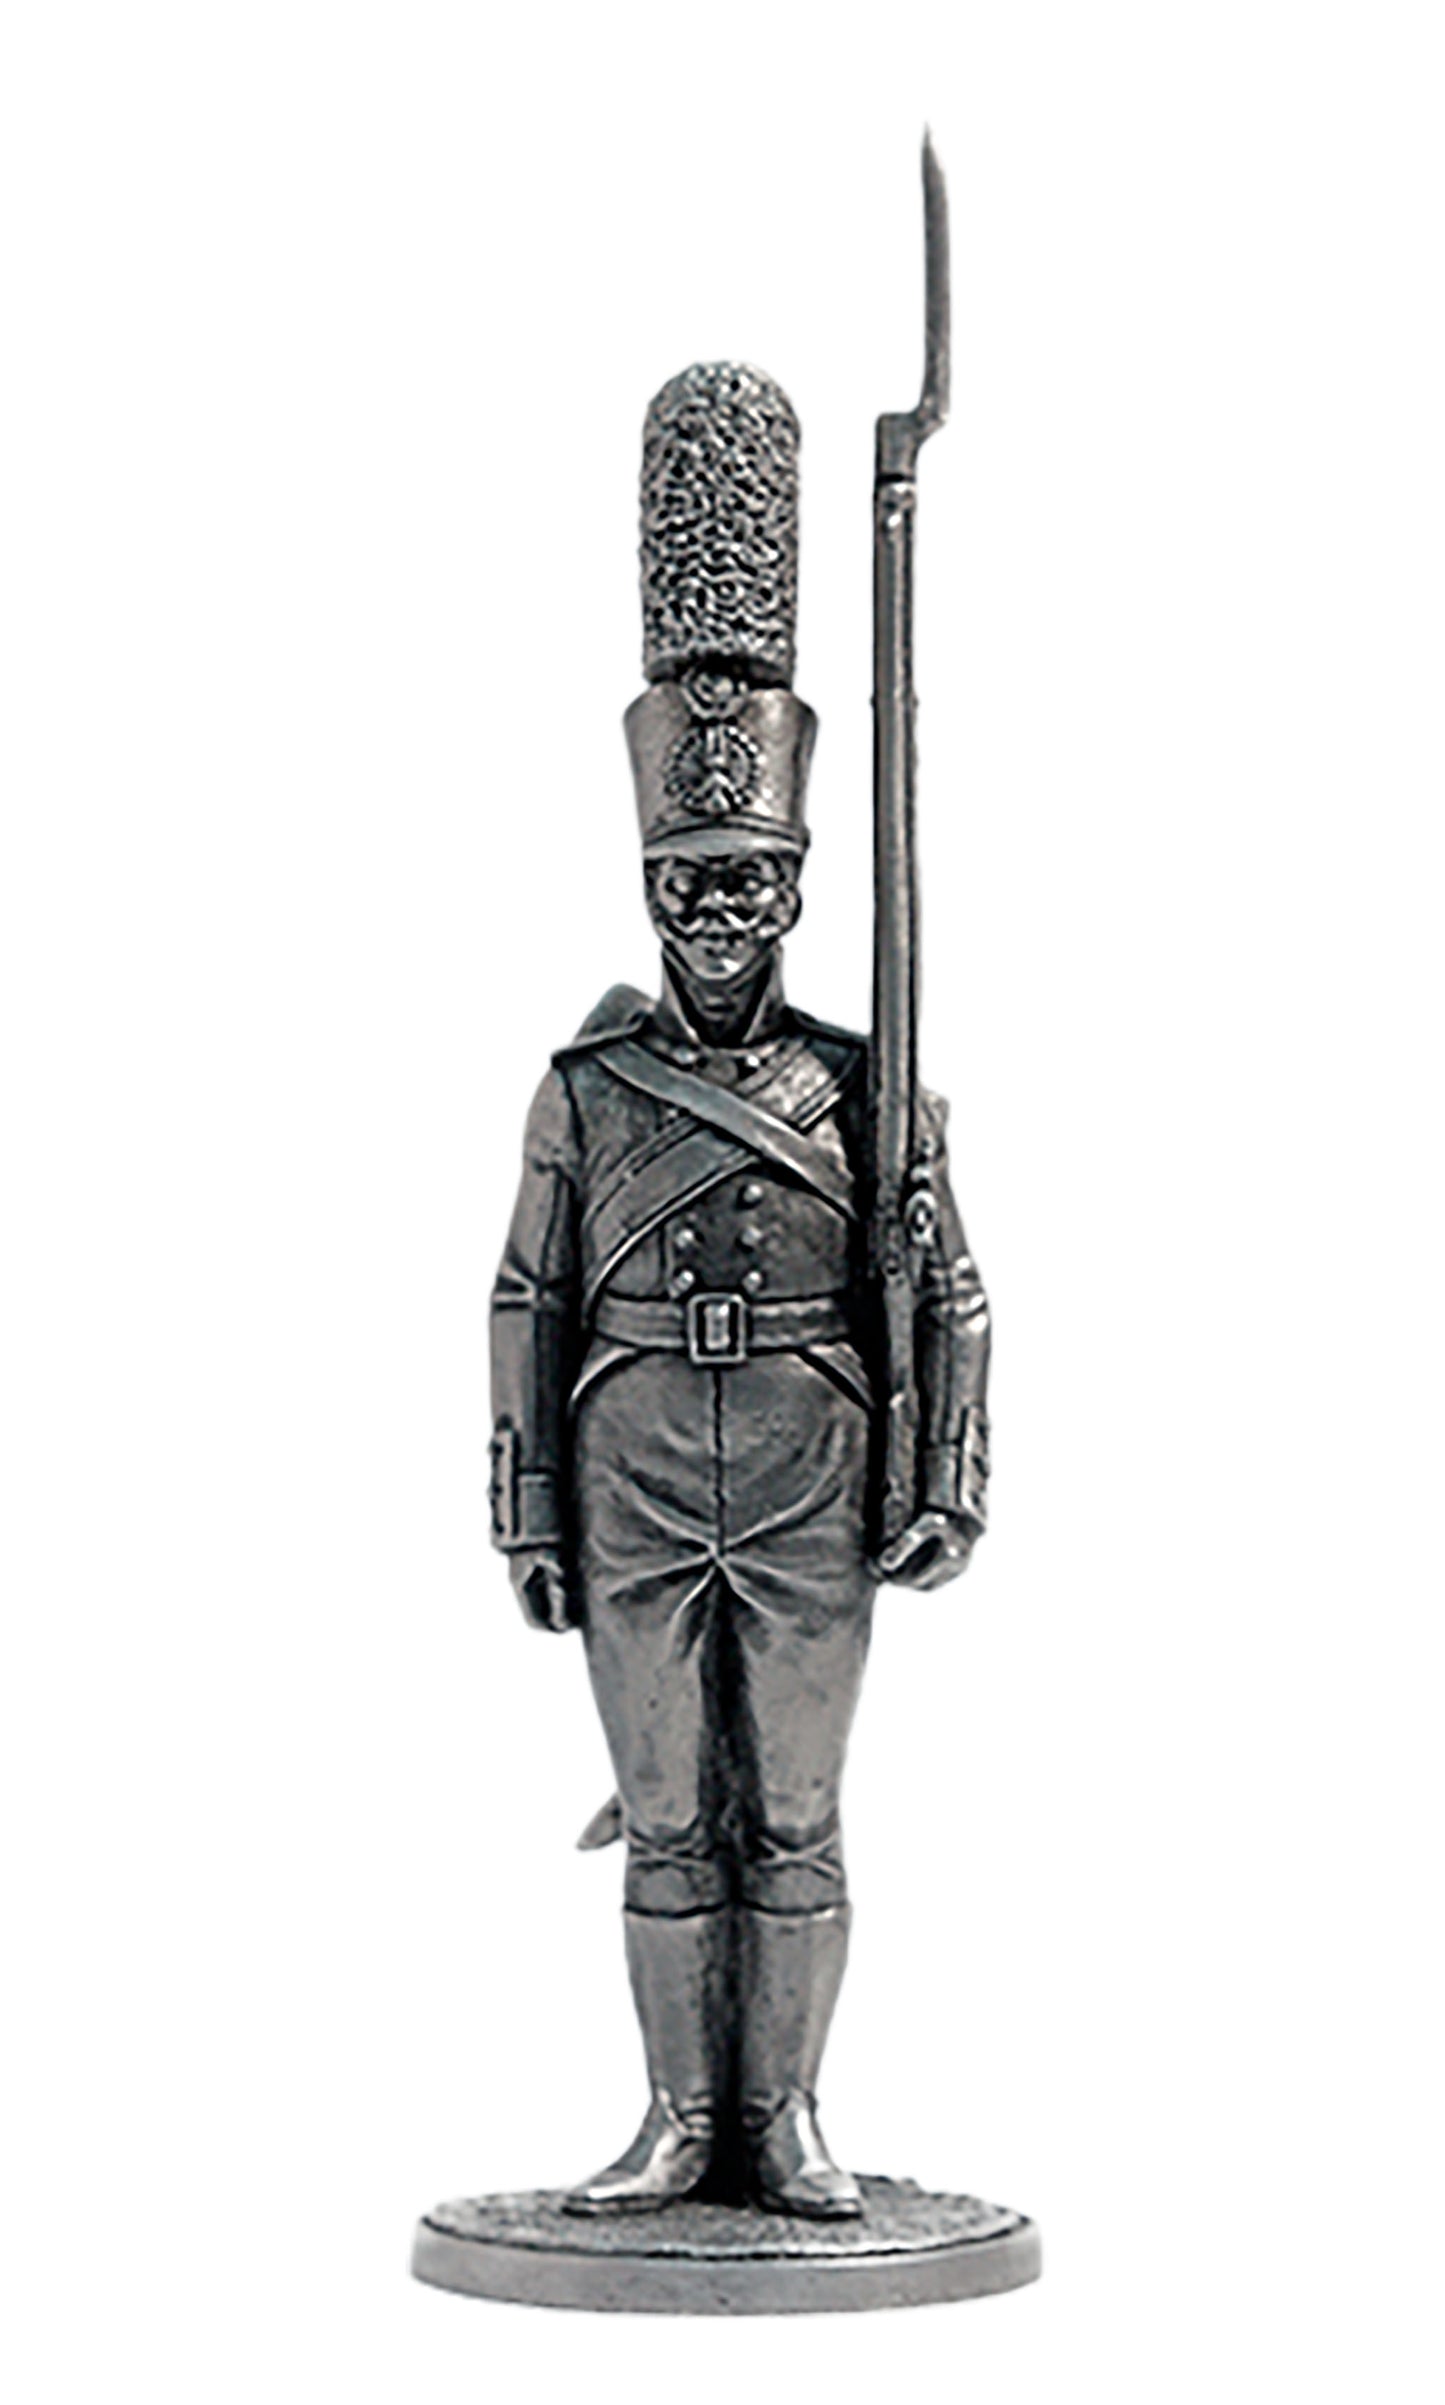 EK-NAP-64 - гренадер Смоленского мушкетерского полка. Россия, 1805-07 гг.